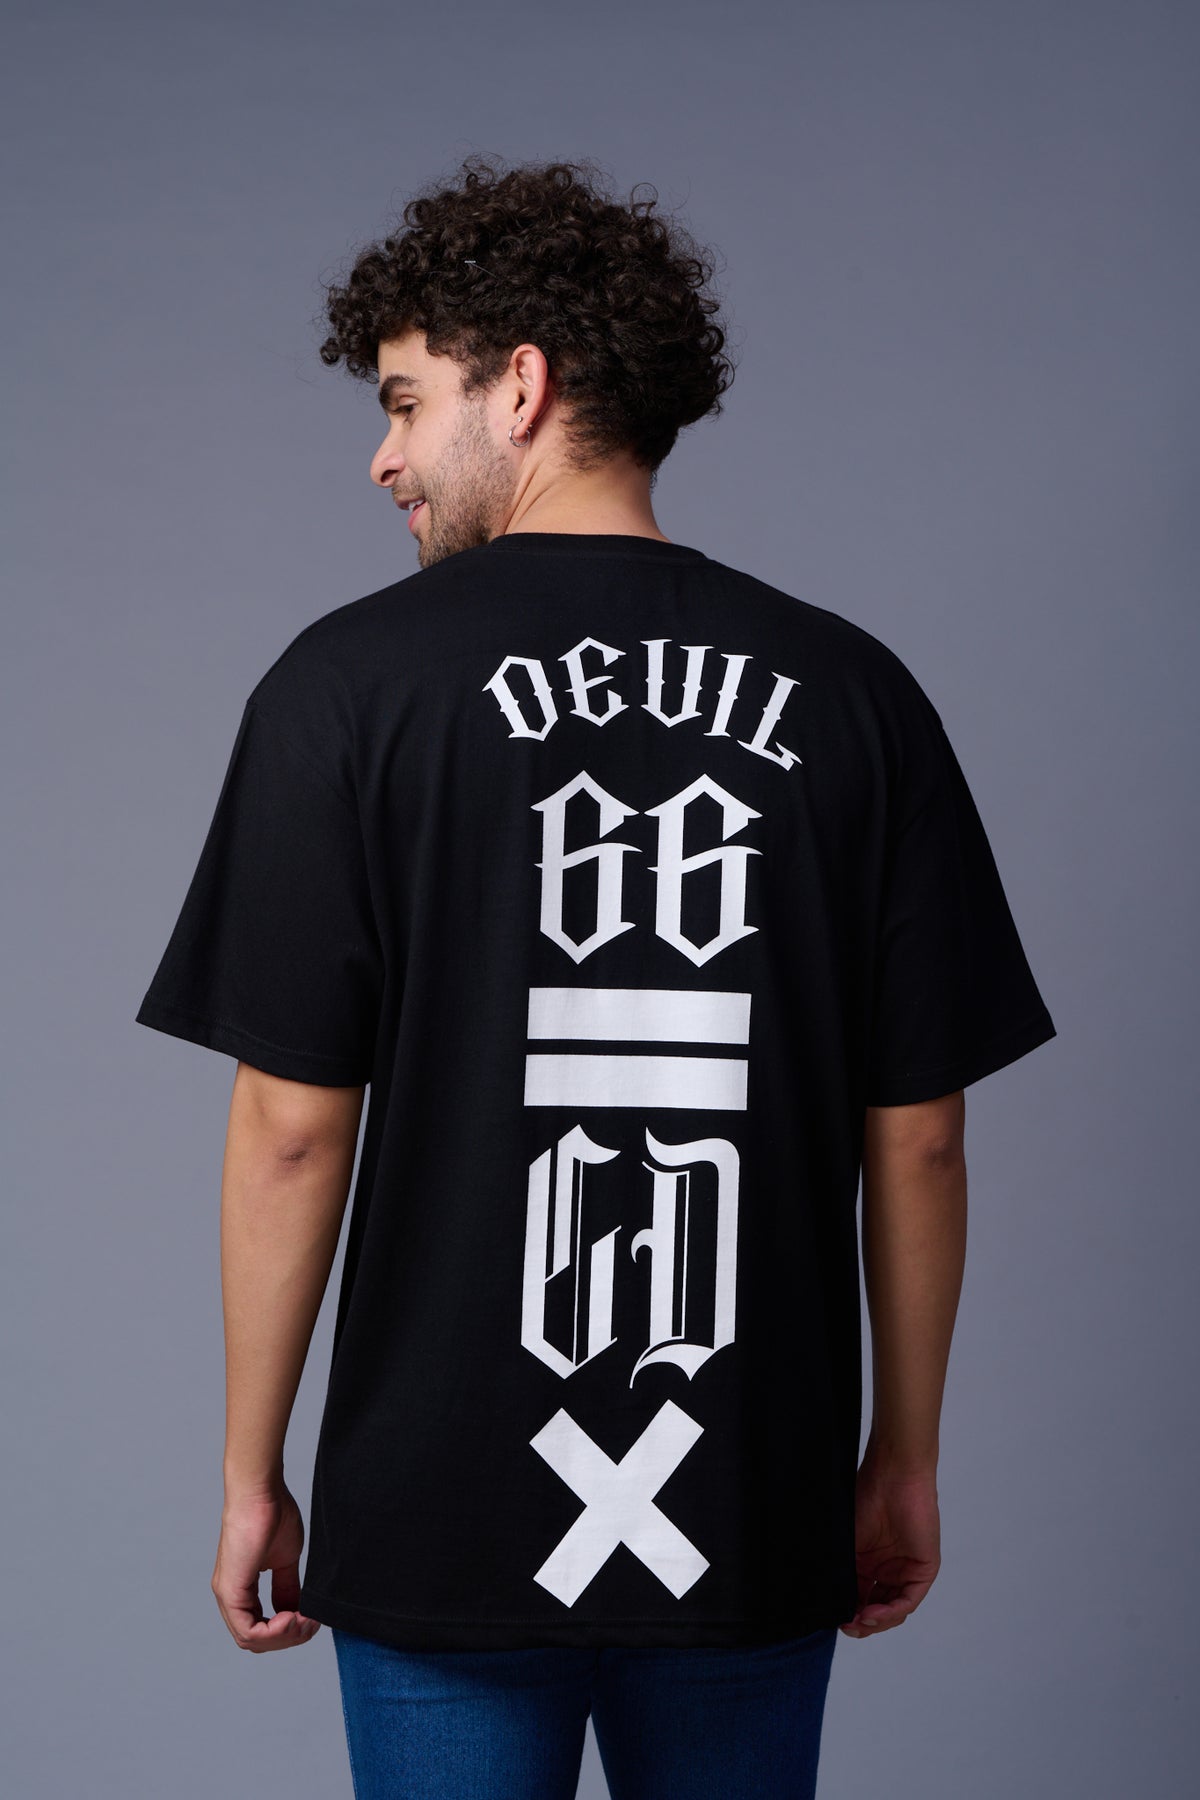 Go Devil 66 GDX (In White) Printed Black Oversized T-Shirt for Men